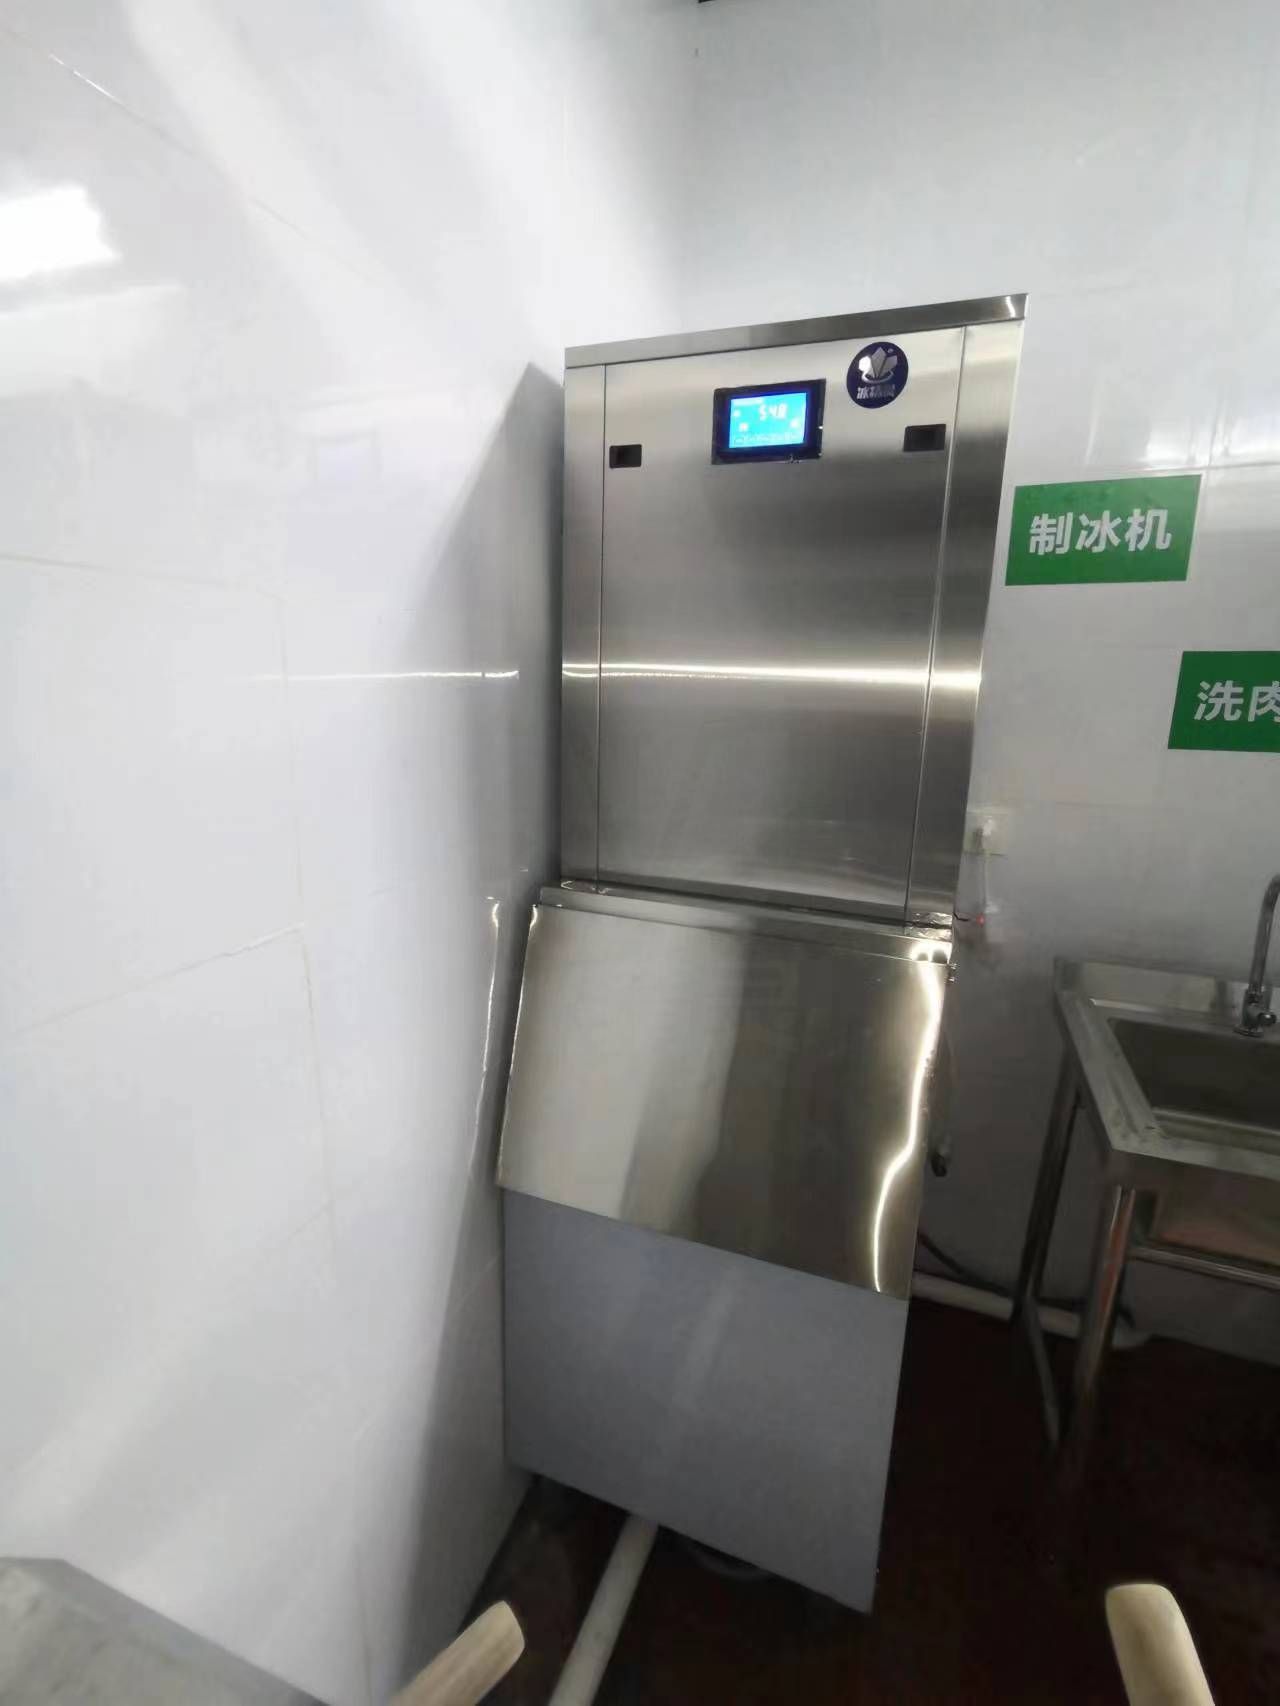 300公斤雪花制冰机交付广东茂名印象汇负一楼火锅店